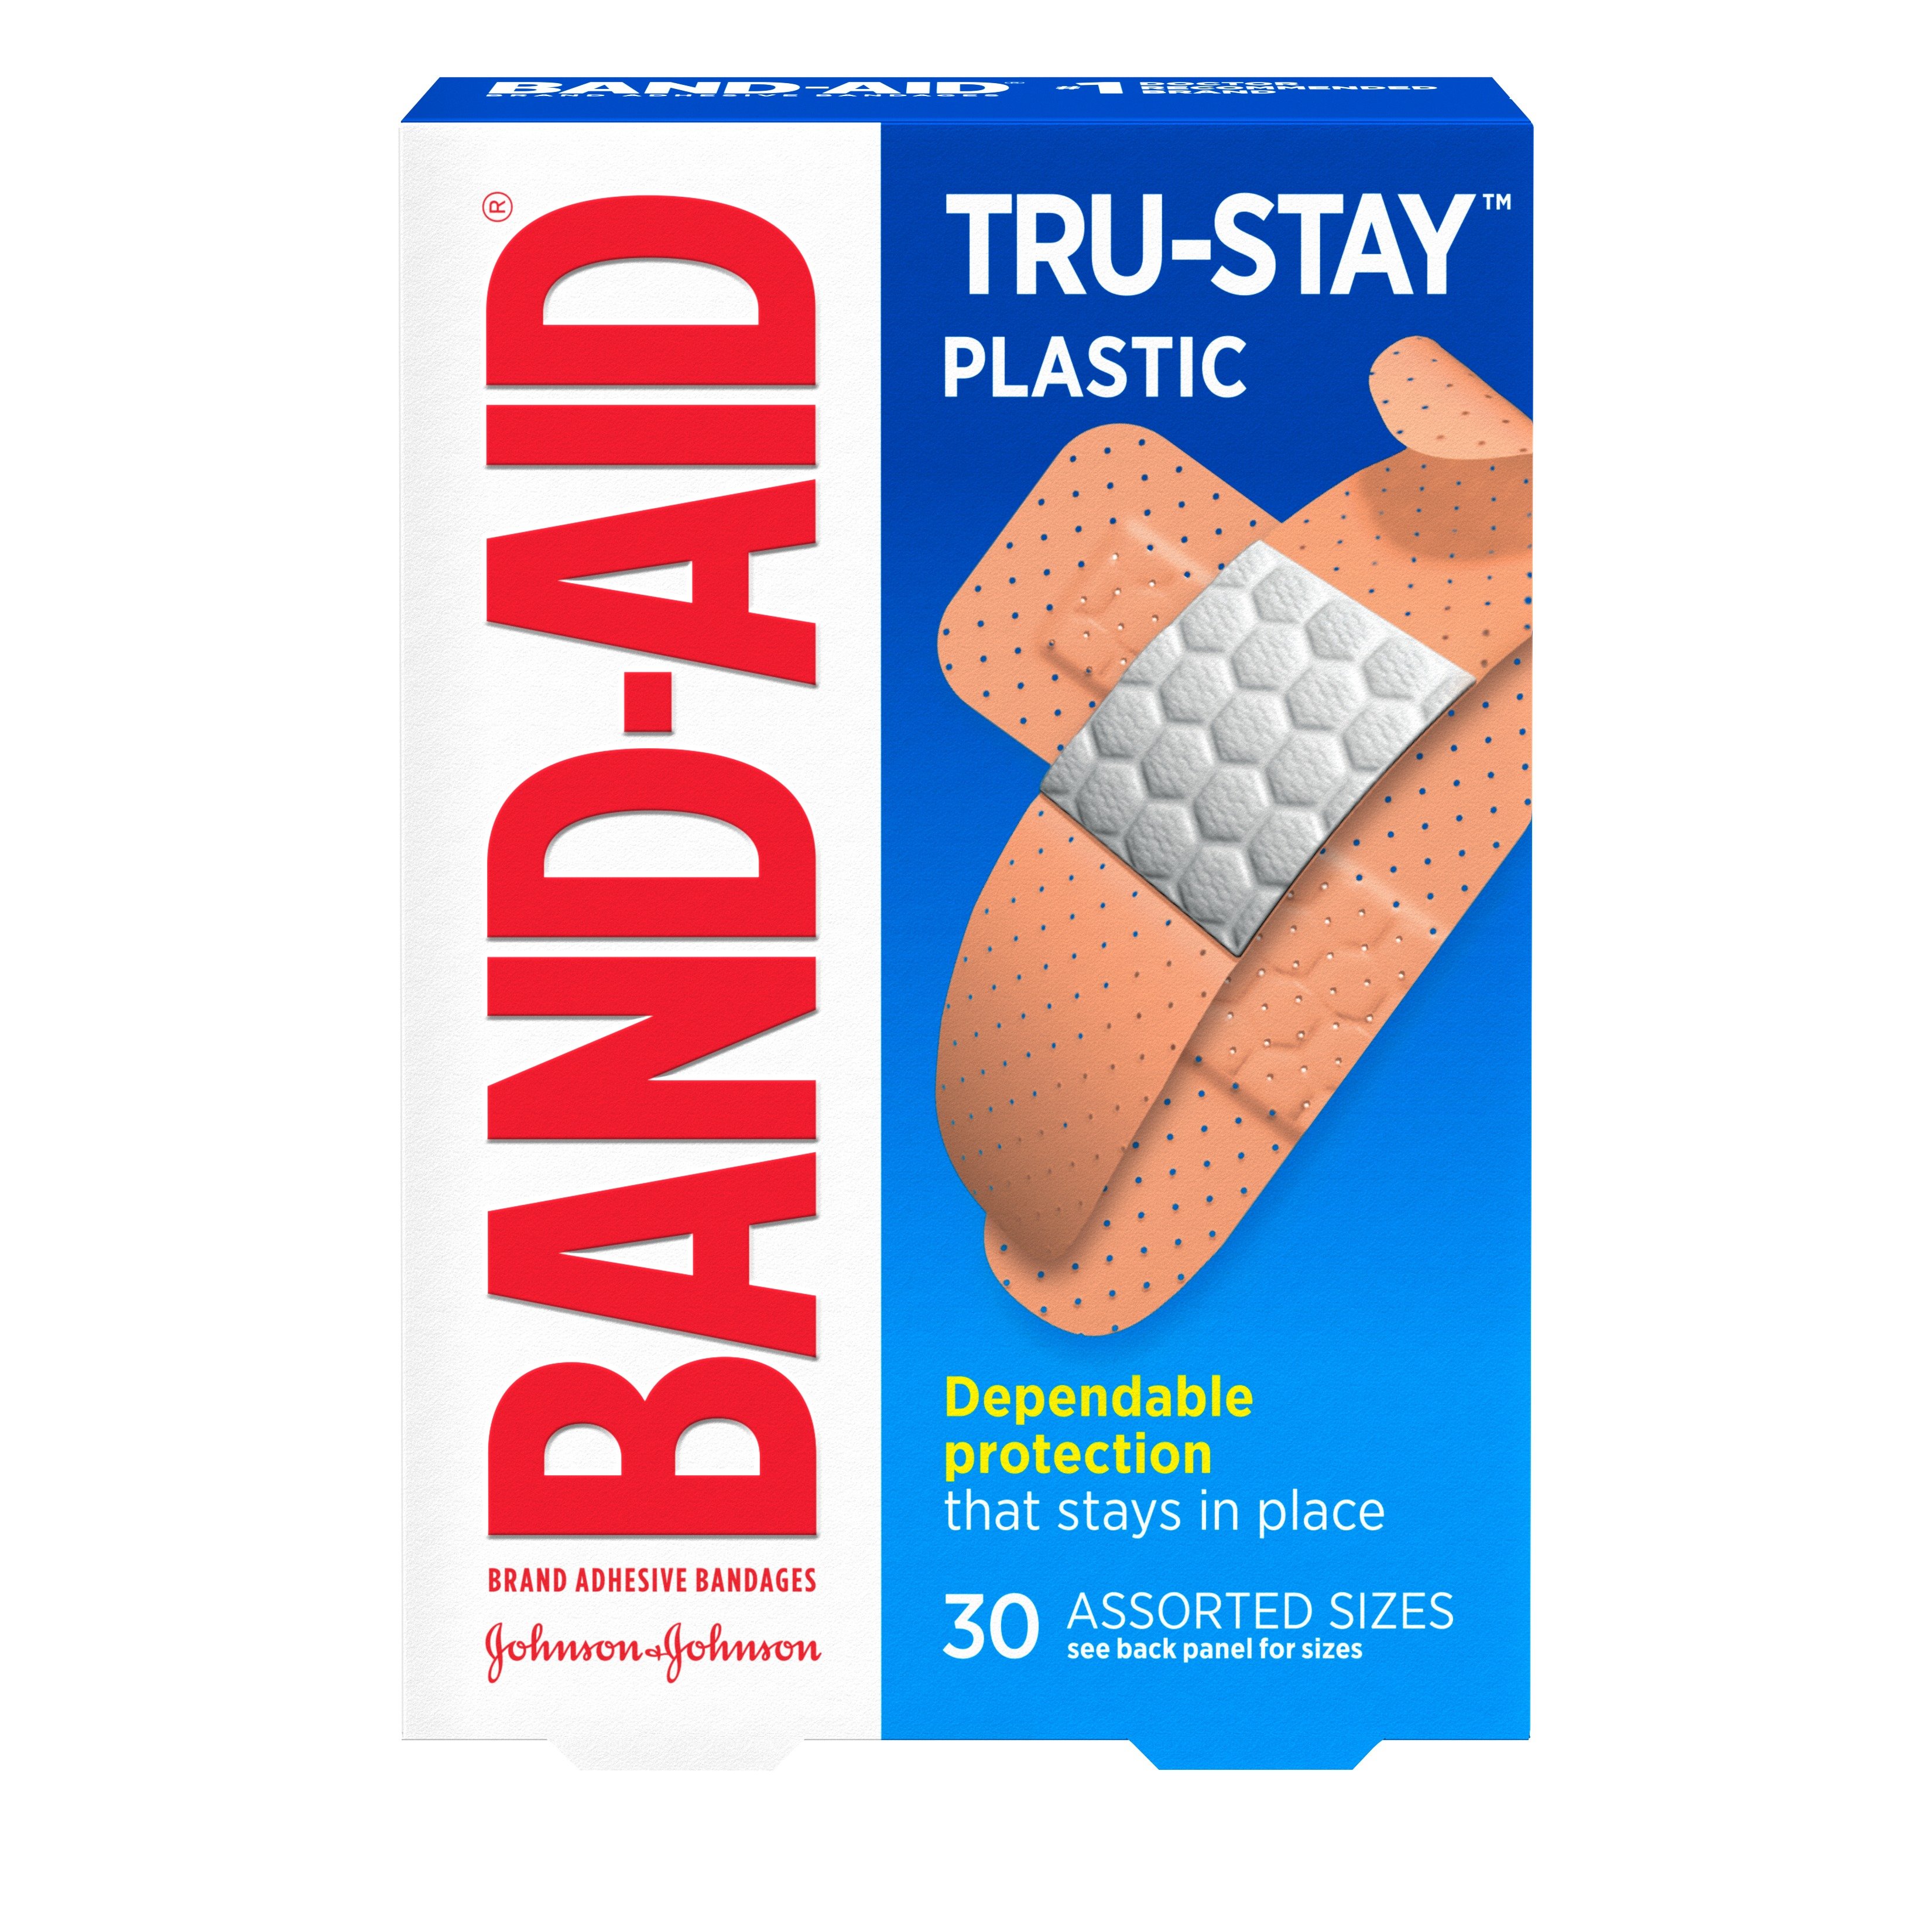 Band Aid Bandit Colorado